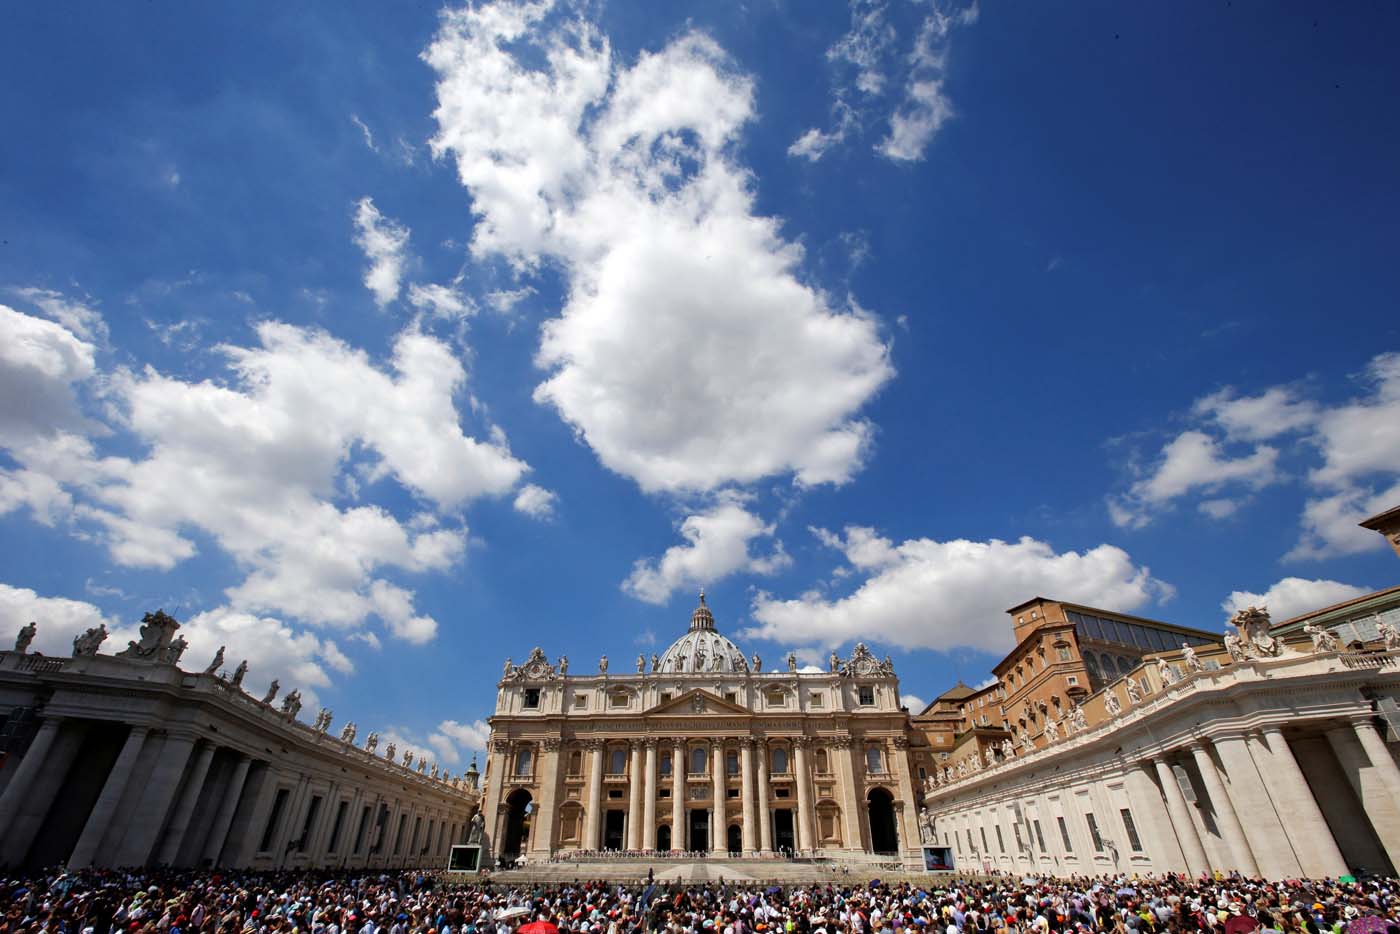 Con intervención del Vaticano si se abre posibilidad de diálogo entre gobierno y oposición